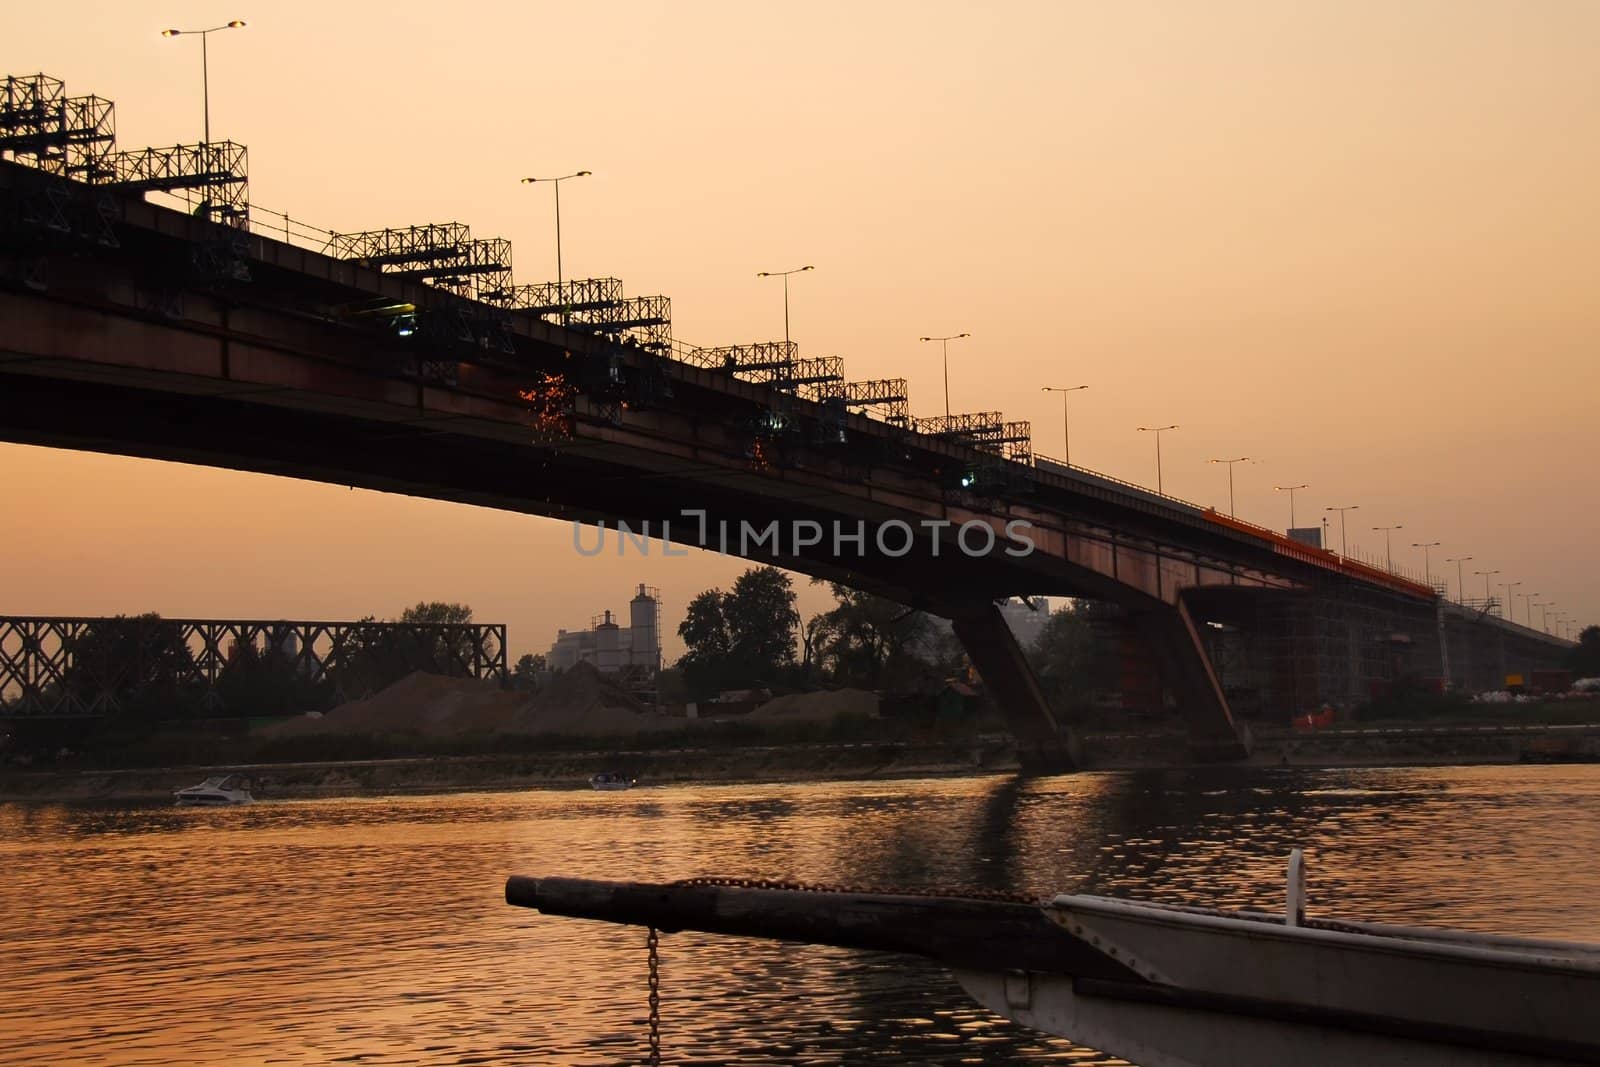 Bridge reconstruction in Belgrade by simply